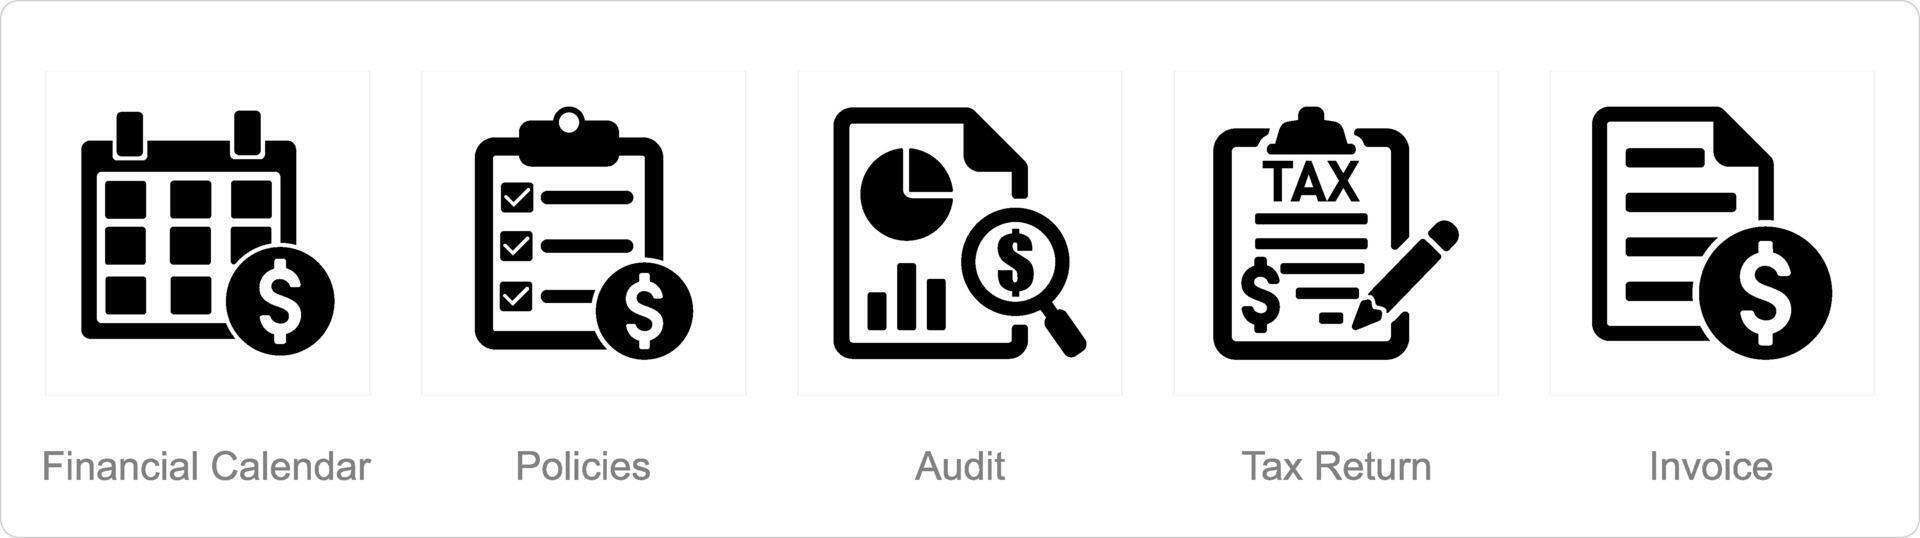 een reeks van 5 accounting pictogrammen net zo financieel kalender, beleid, audit vector